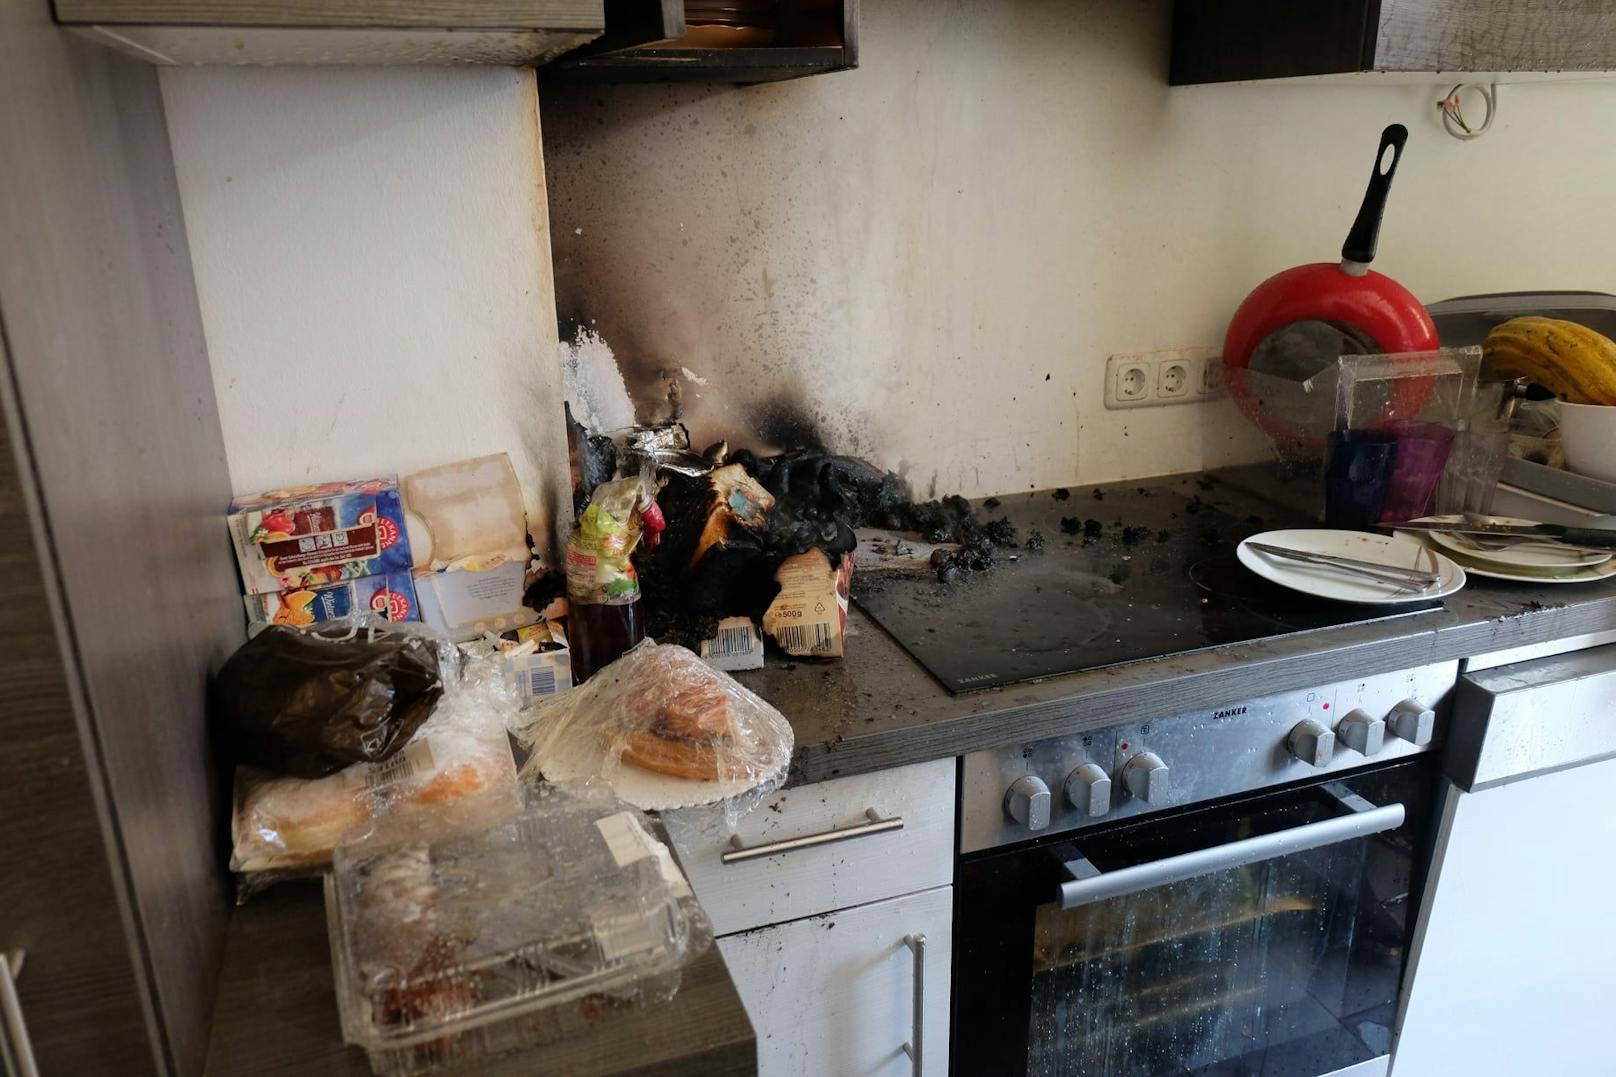 Mann kochte Snack und schlief ein – Wohnung in Flammen